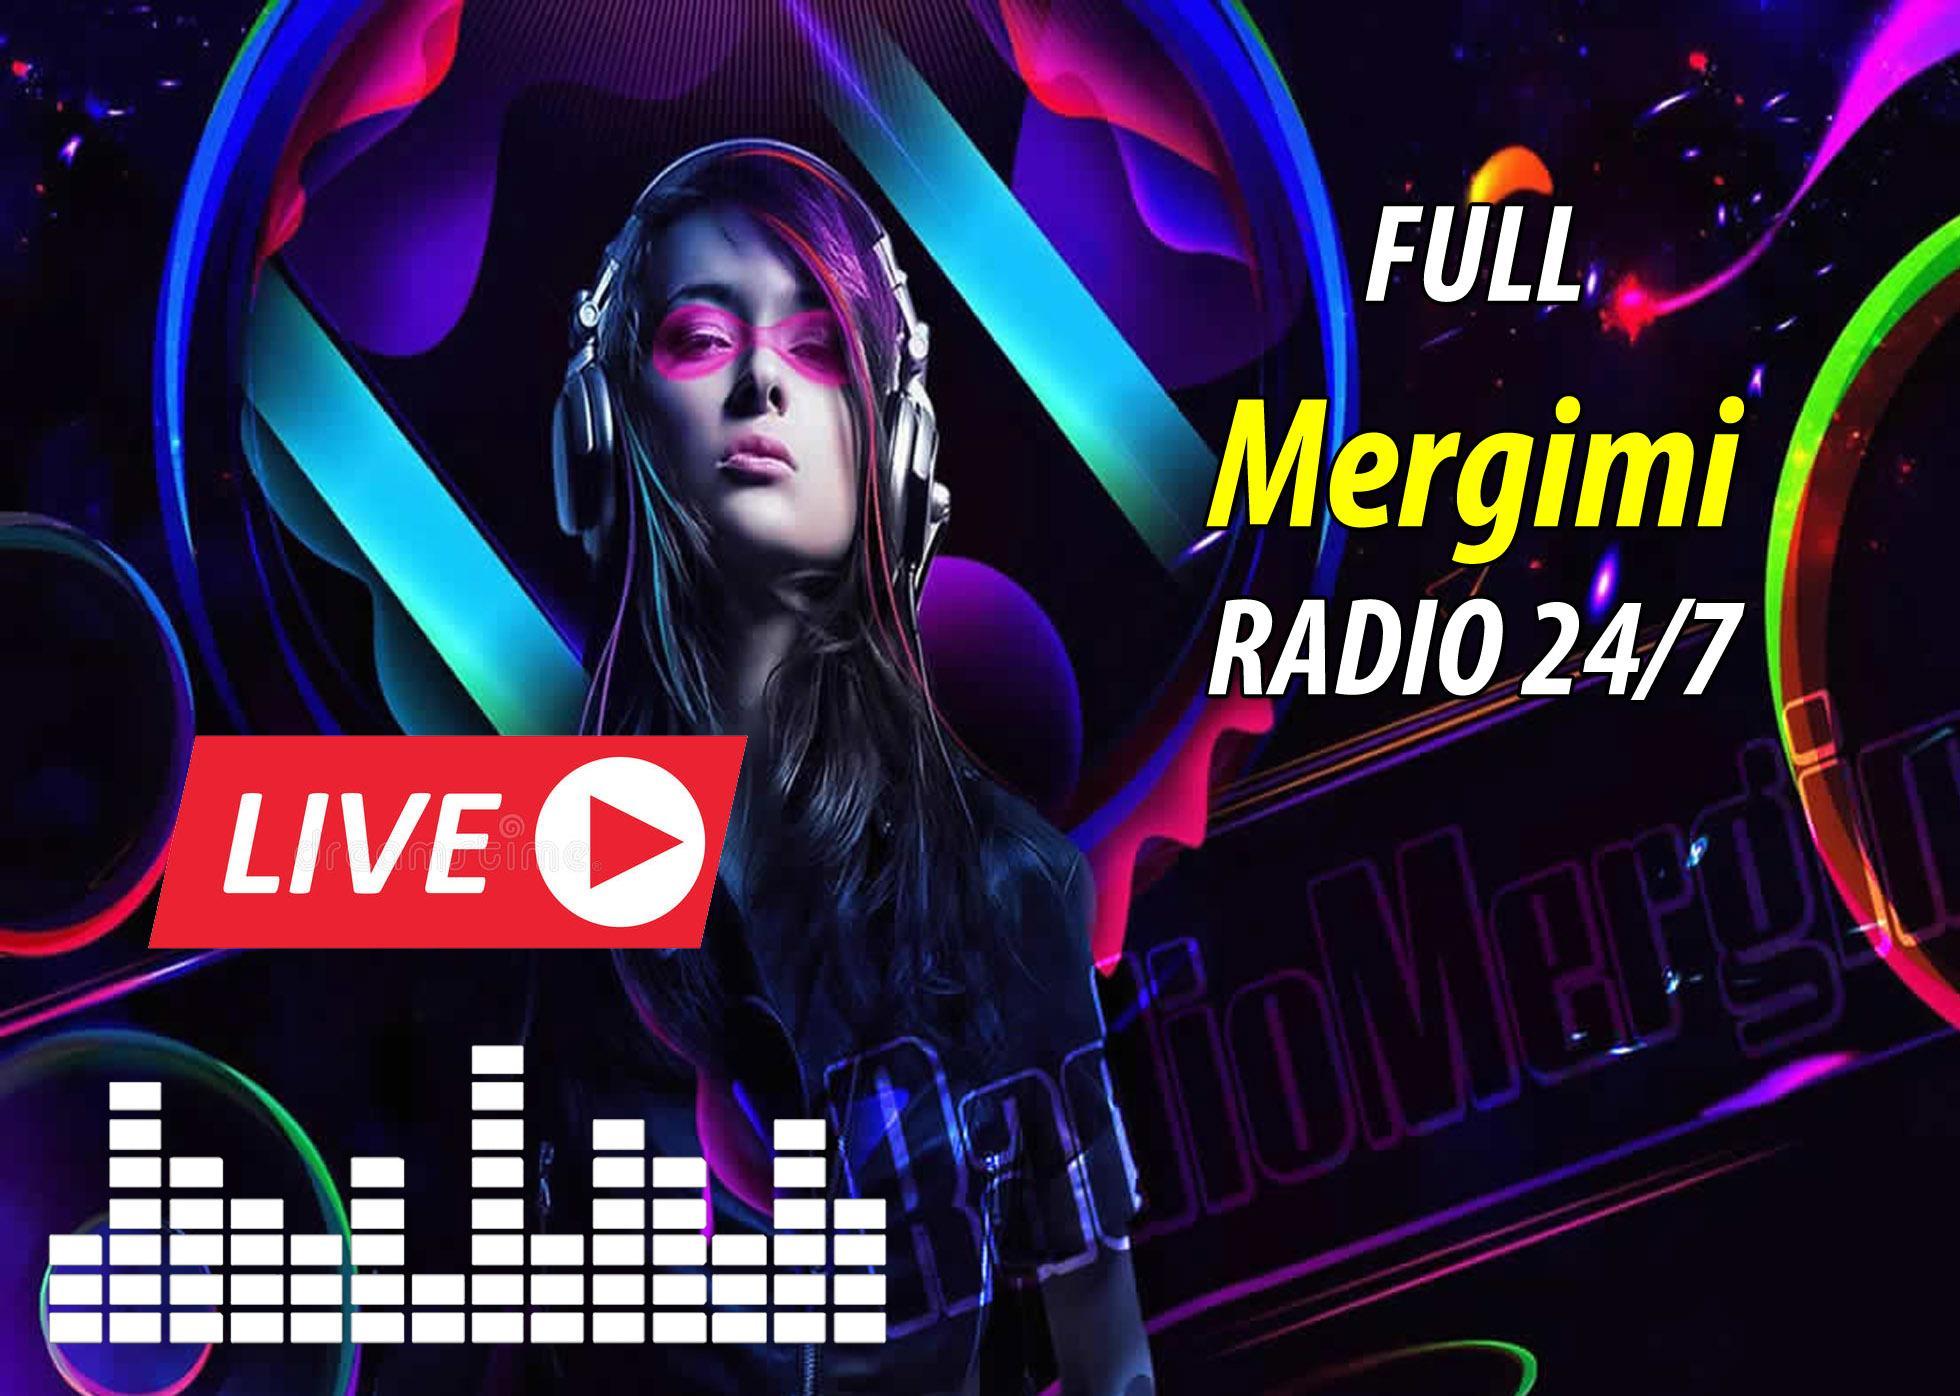 Radio Mergimi 24/7 Online für Android - APK herunterladen